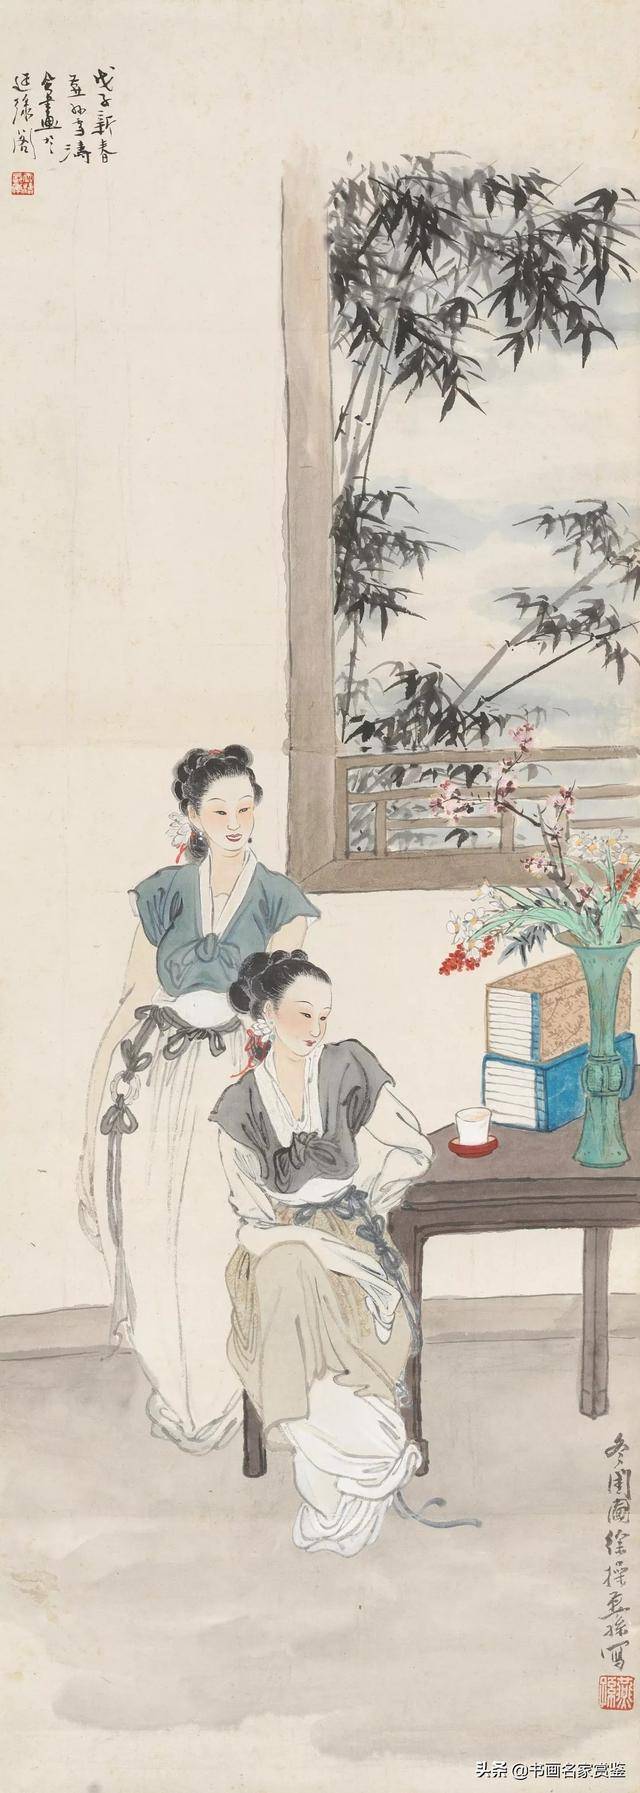 民国时期,北方画坛的领军人物——徐操 仕女人物画作欣赏